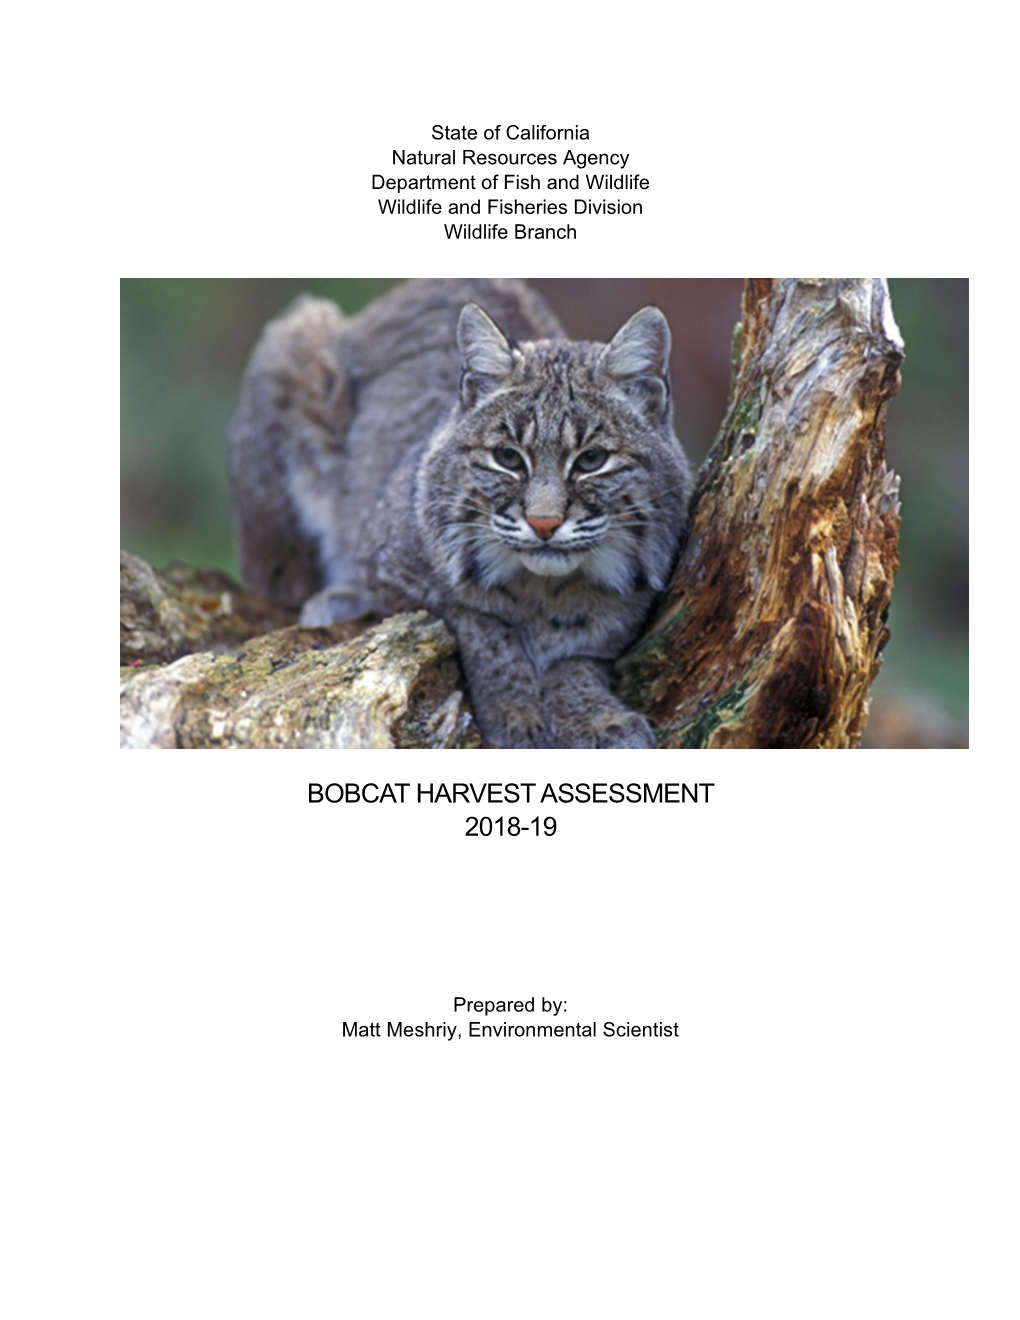 Bobcat Harvest Assessment 2018-19